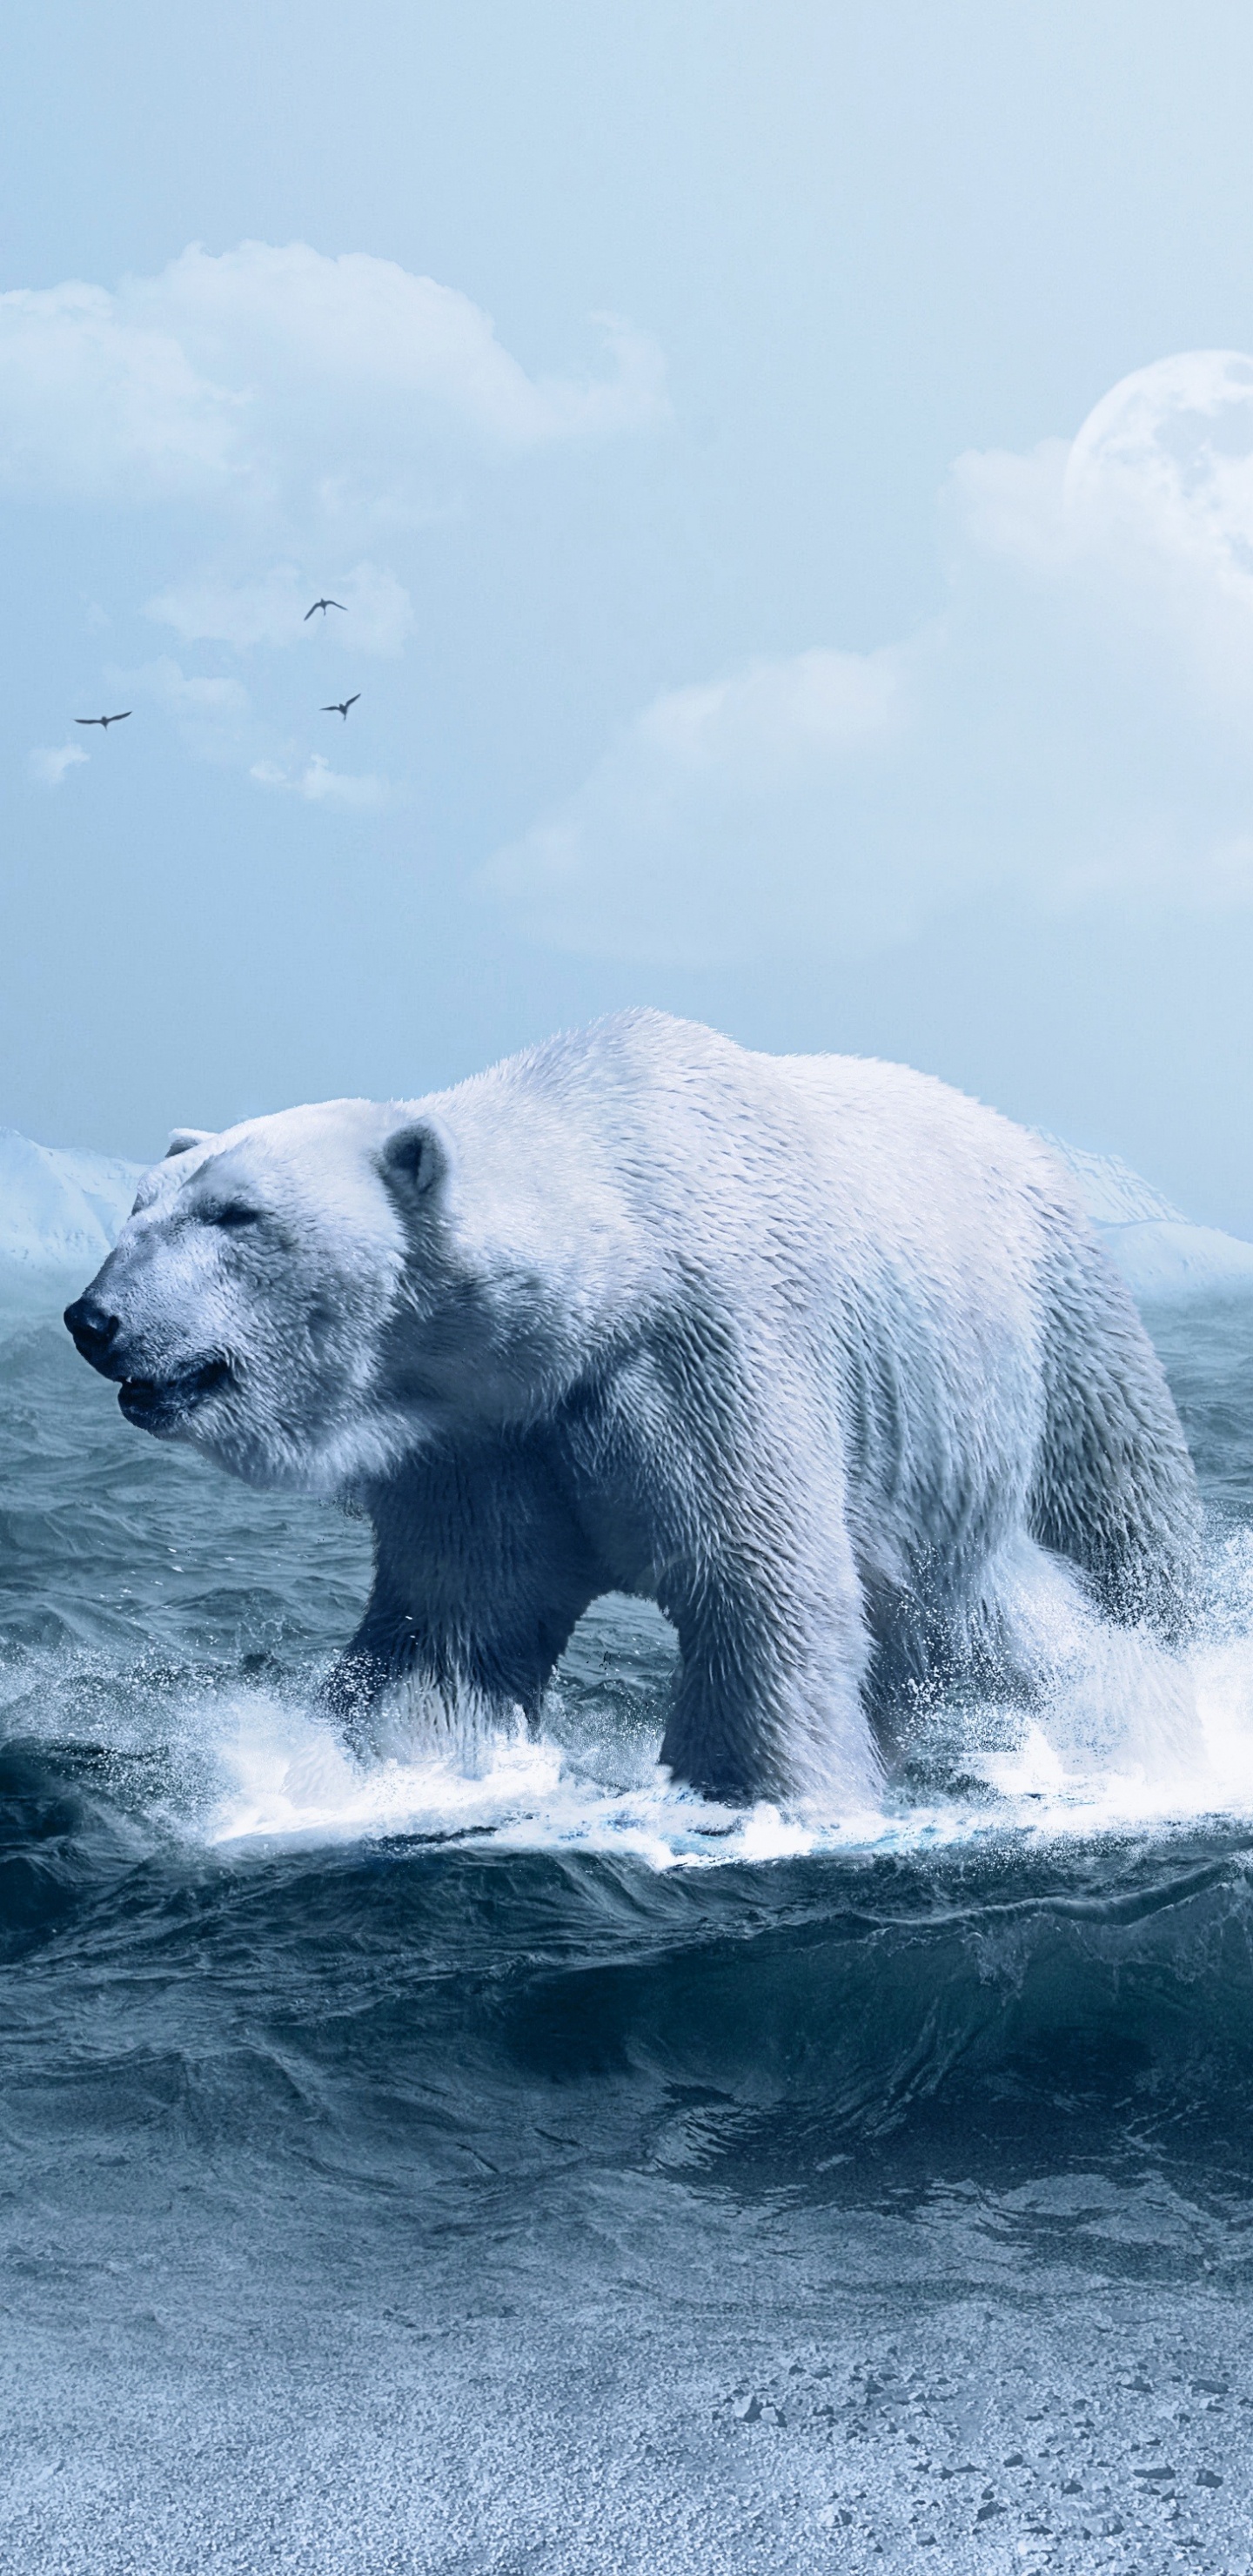 北极熊, 熊, 北极, 极地冰盖, 野生动物 壁纸 1440x2960 允许